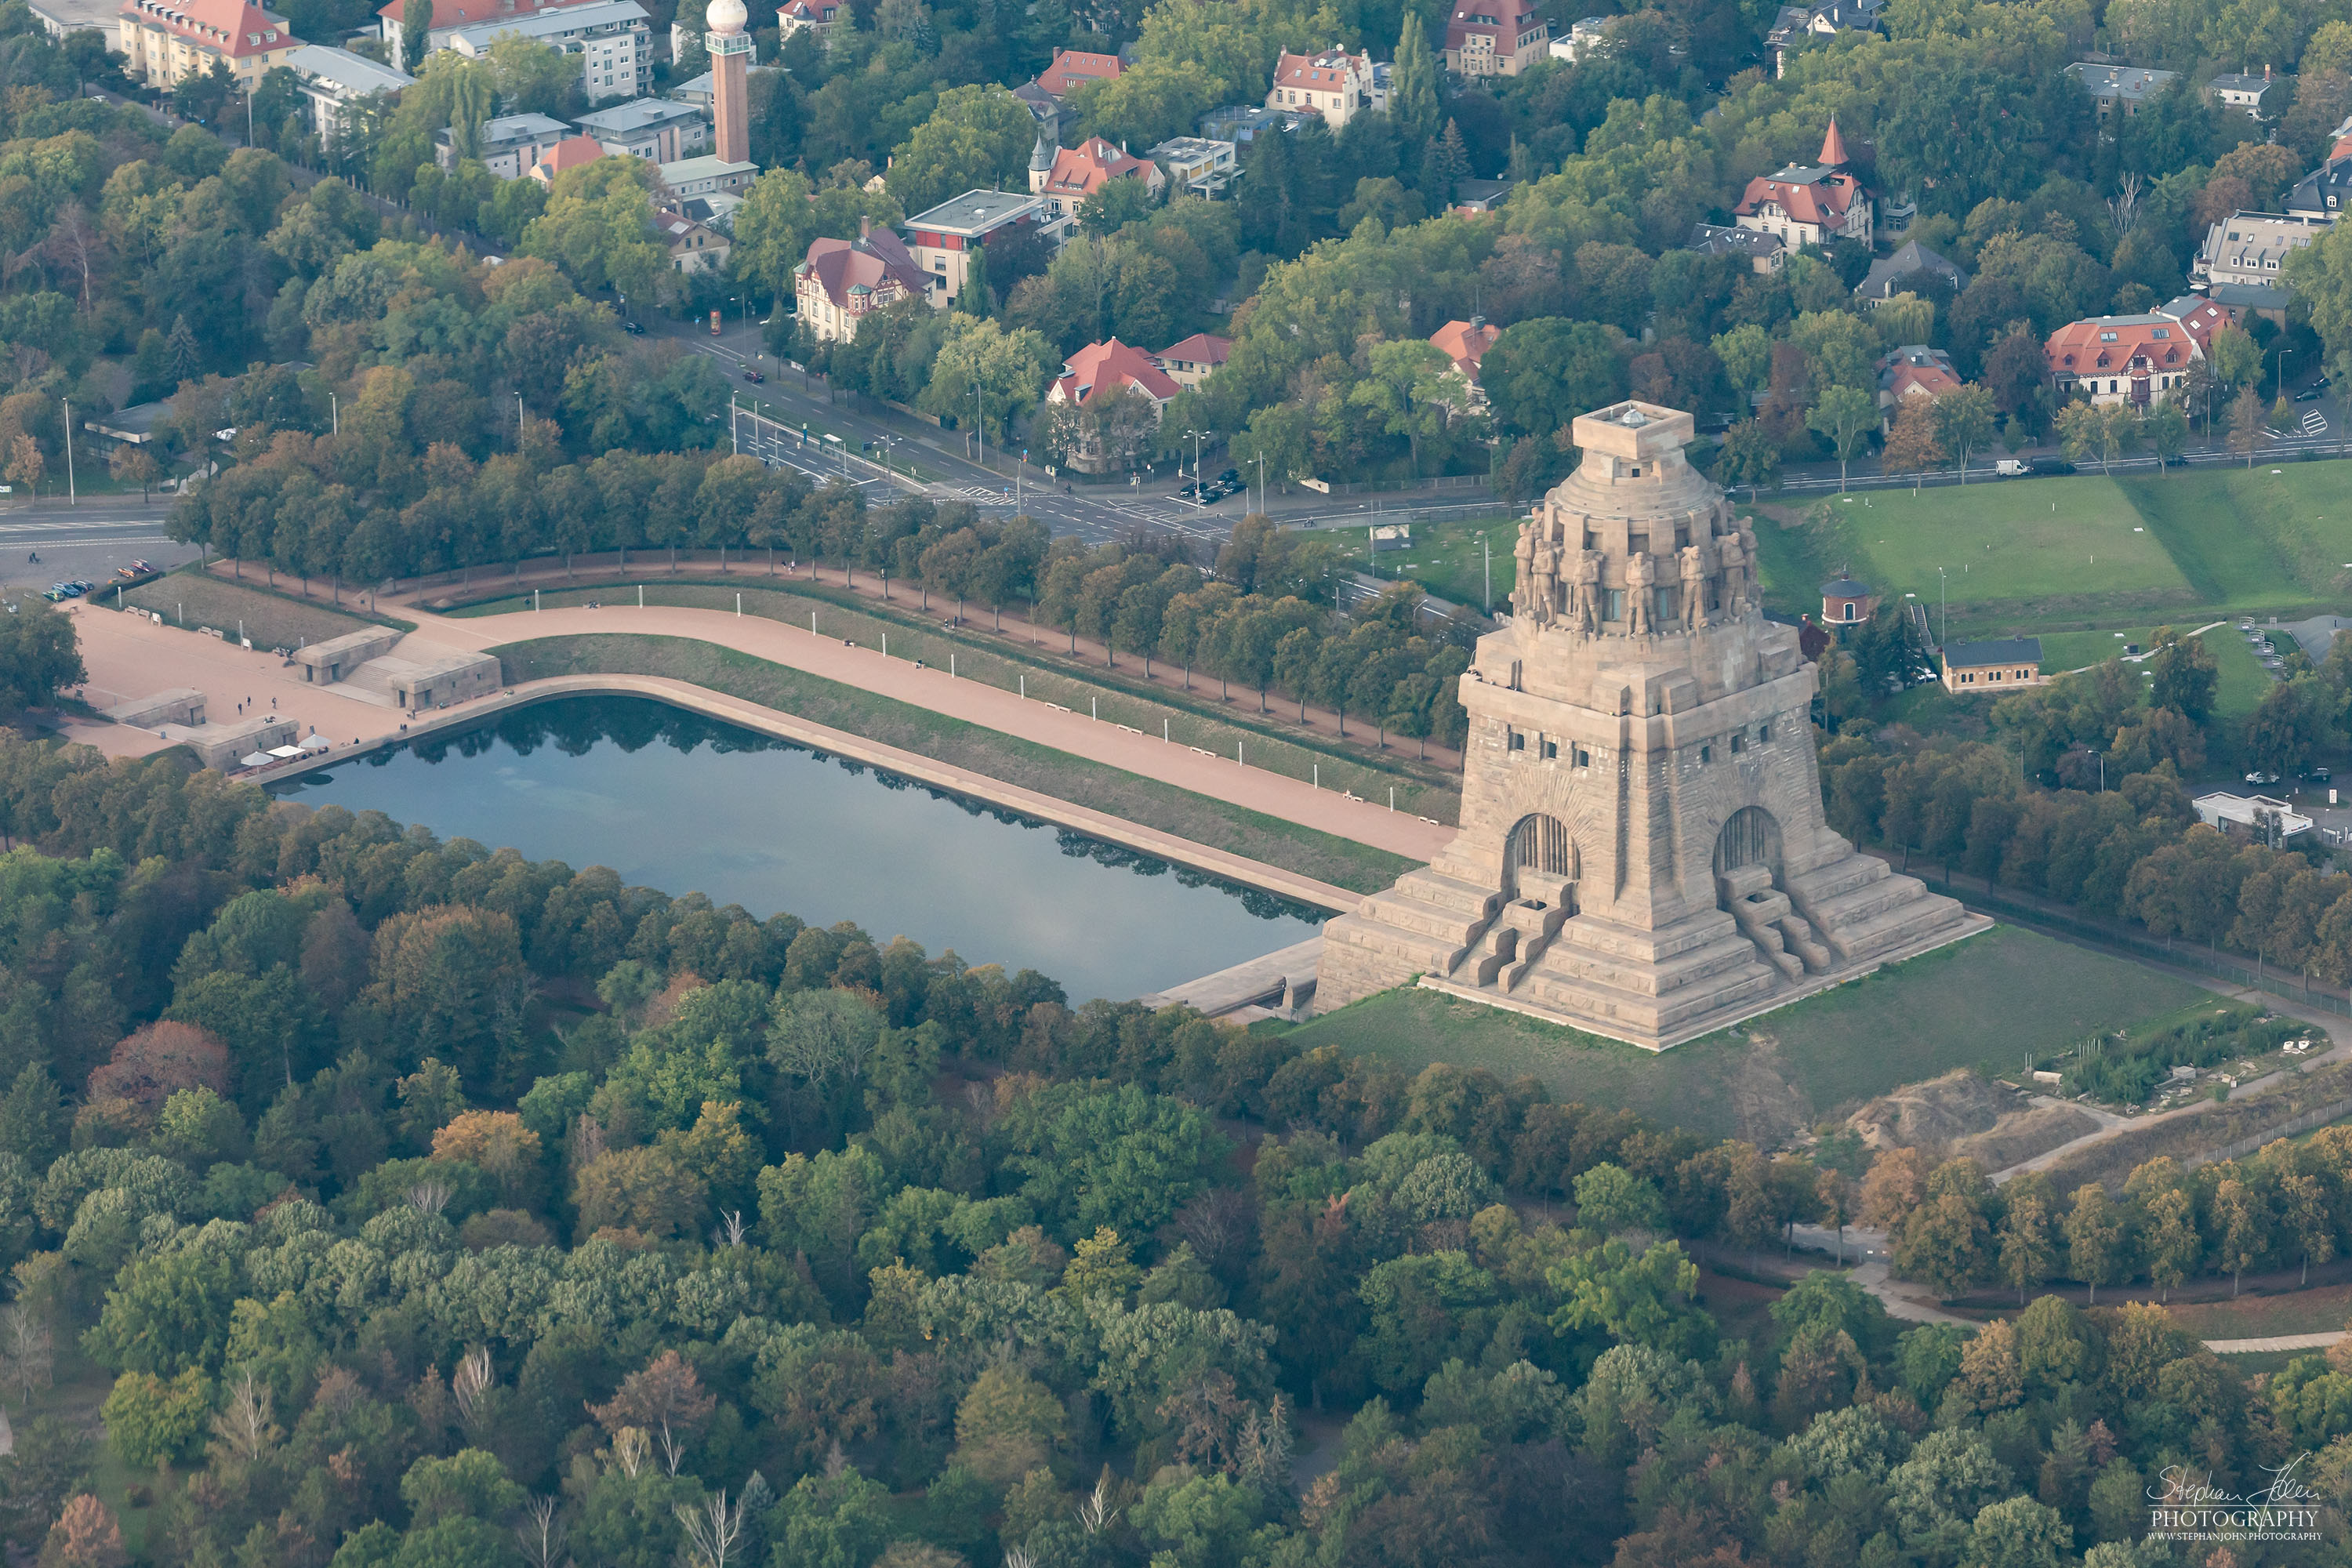 Das Völkerschlachtdenkmal in Leipzig errinnert an die Völkerschlacht von 1813